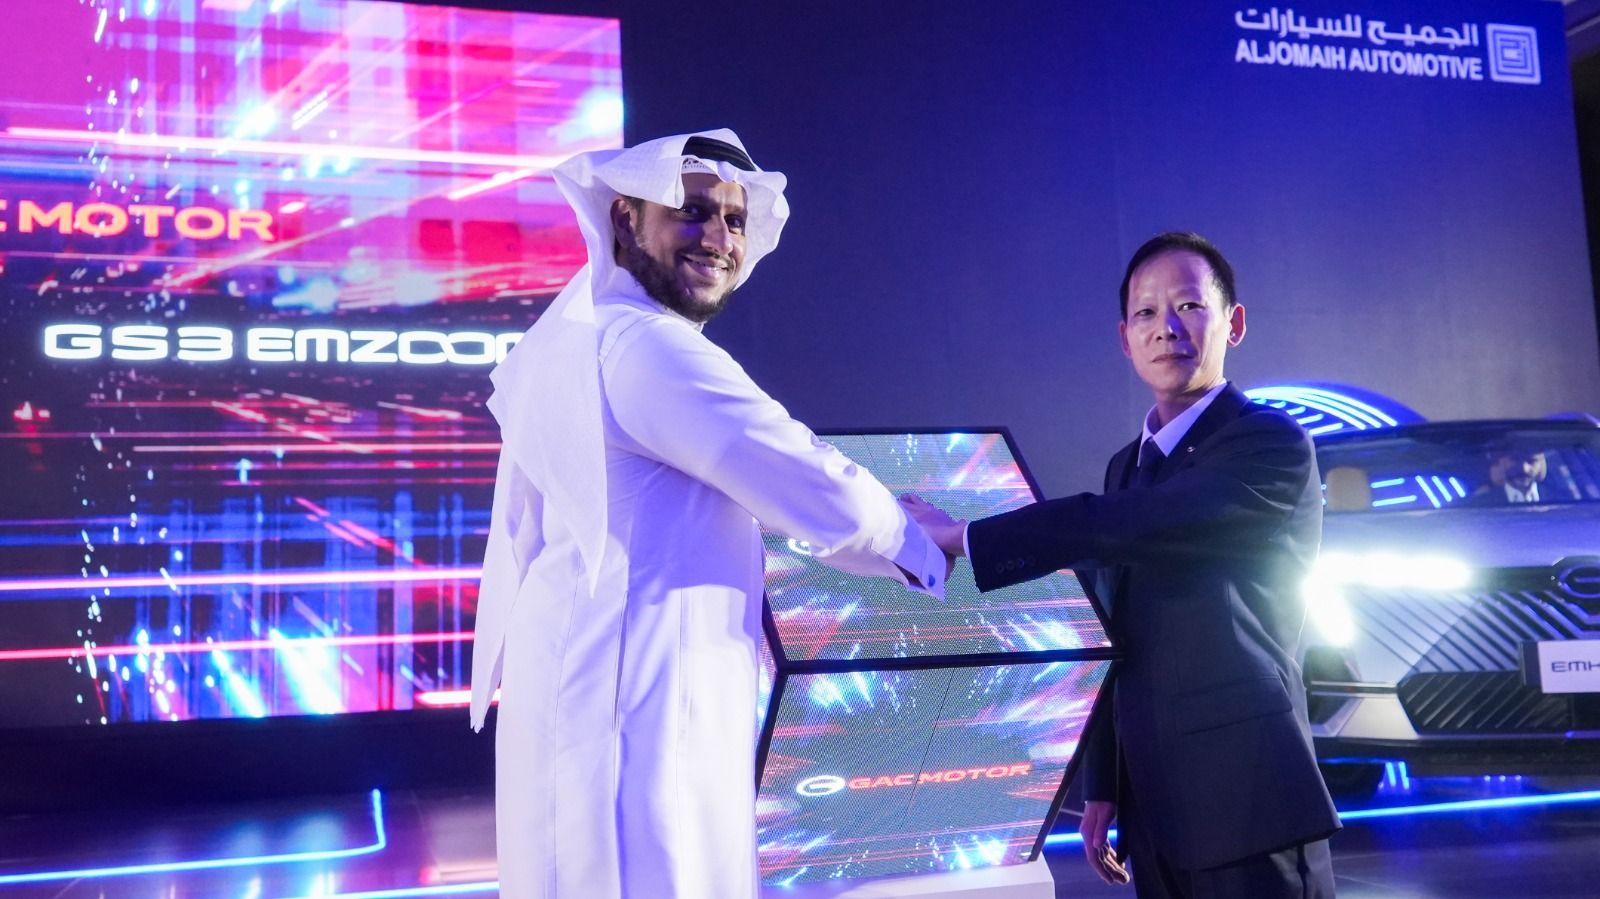 شركة الجميح للسيارات تُعلن عن استراتيجية "جي أيه سي موتور" الجديدة في السوق السعودي وعن إطلاق أحدث موديلاتها جي أيه سي EMKOO و EMZOOM GS3 2